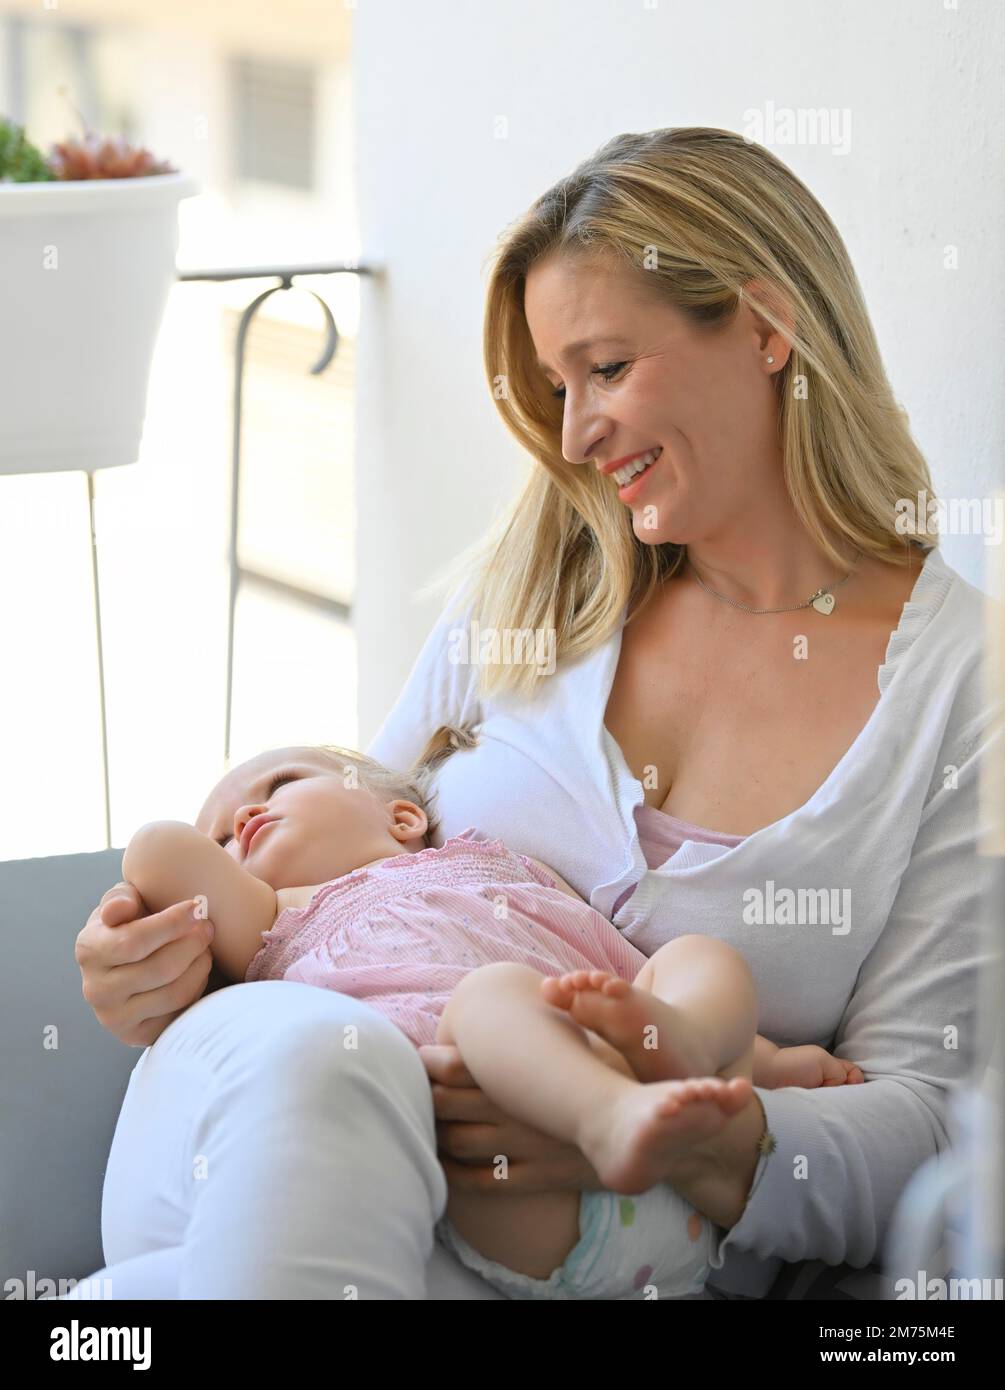 Mutter hat Mädchen, Kleinkind, 11 Monate, auf dem Schoß, Baden-Württemberg, Deutschland Stockfoto